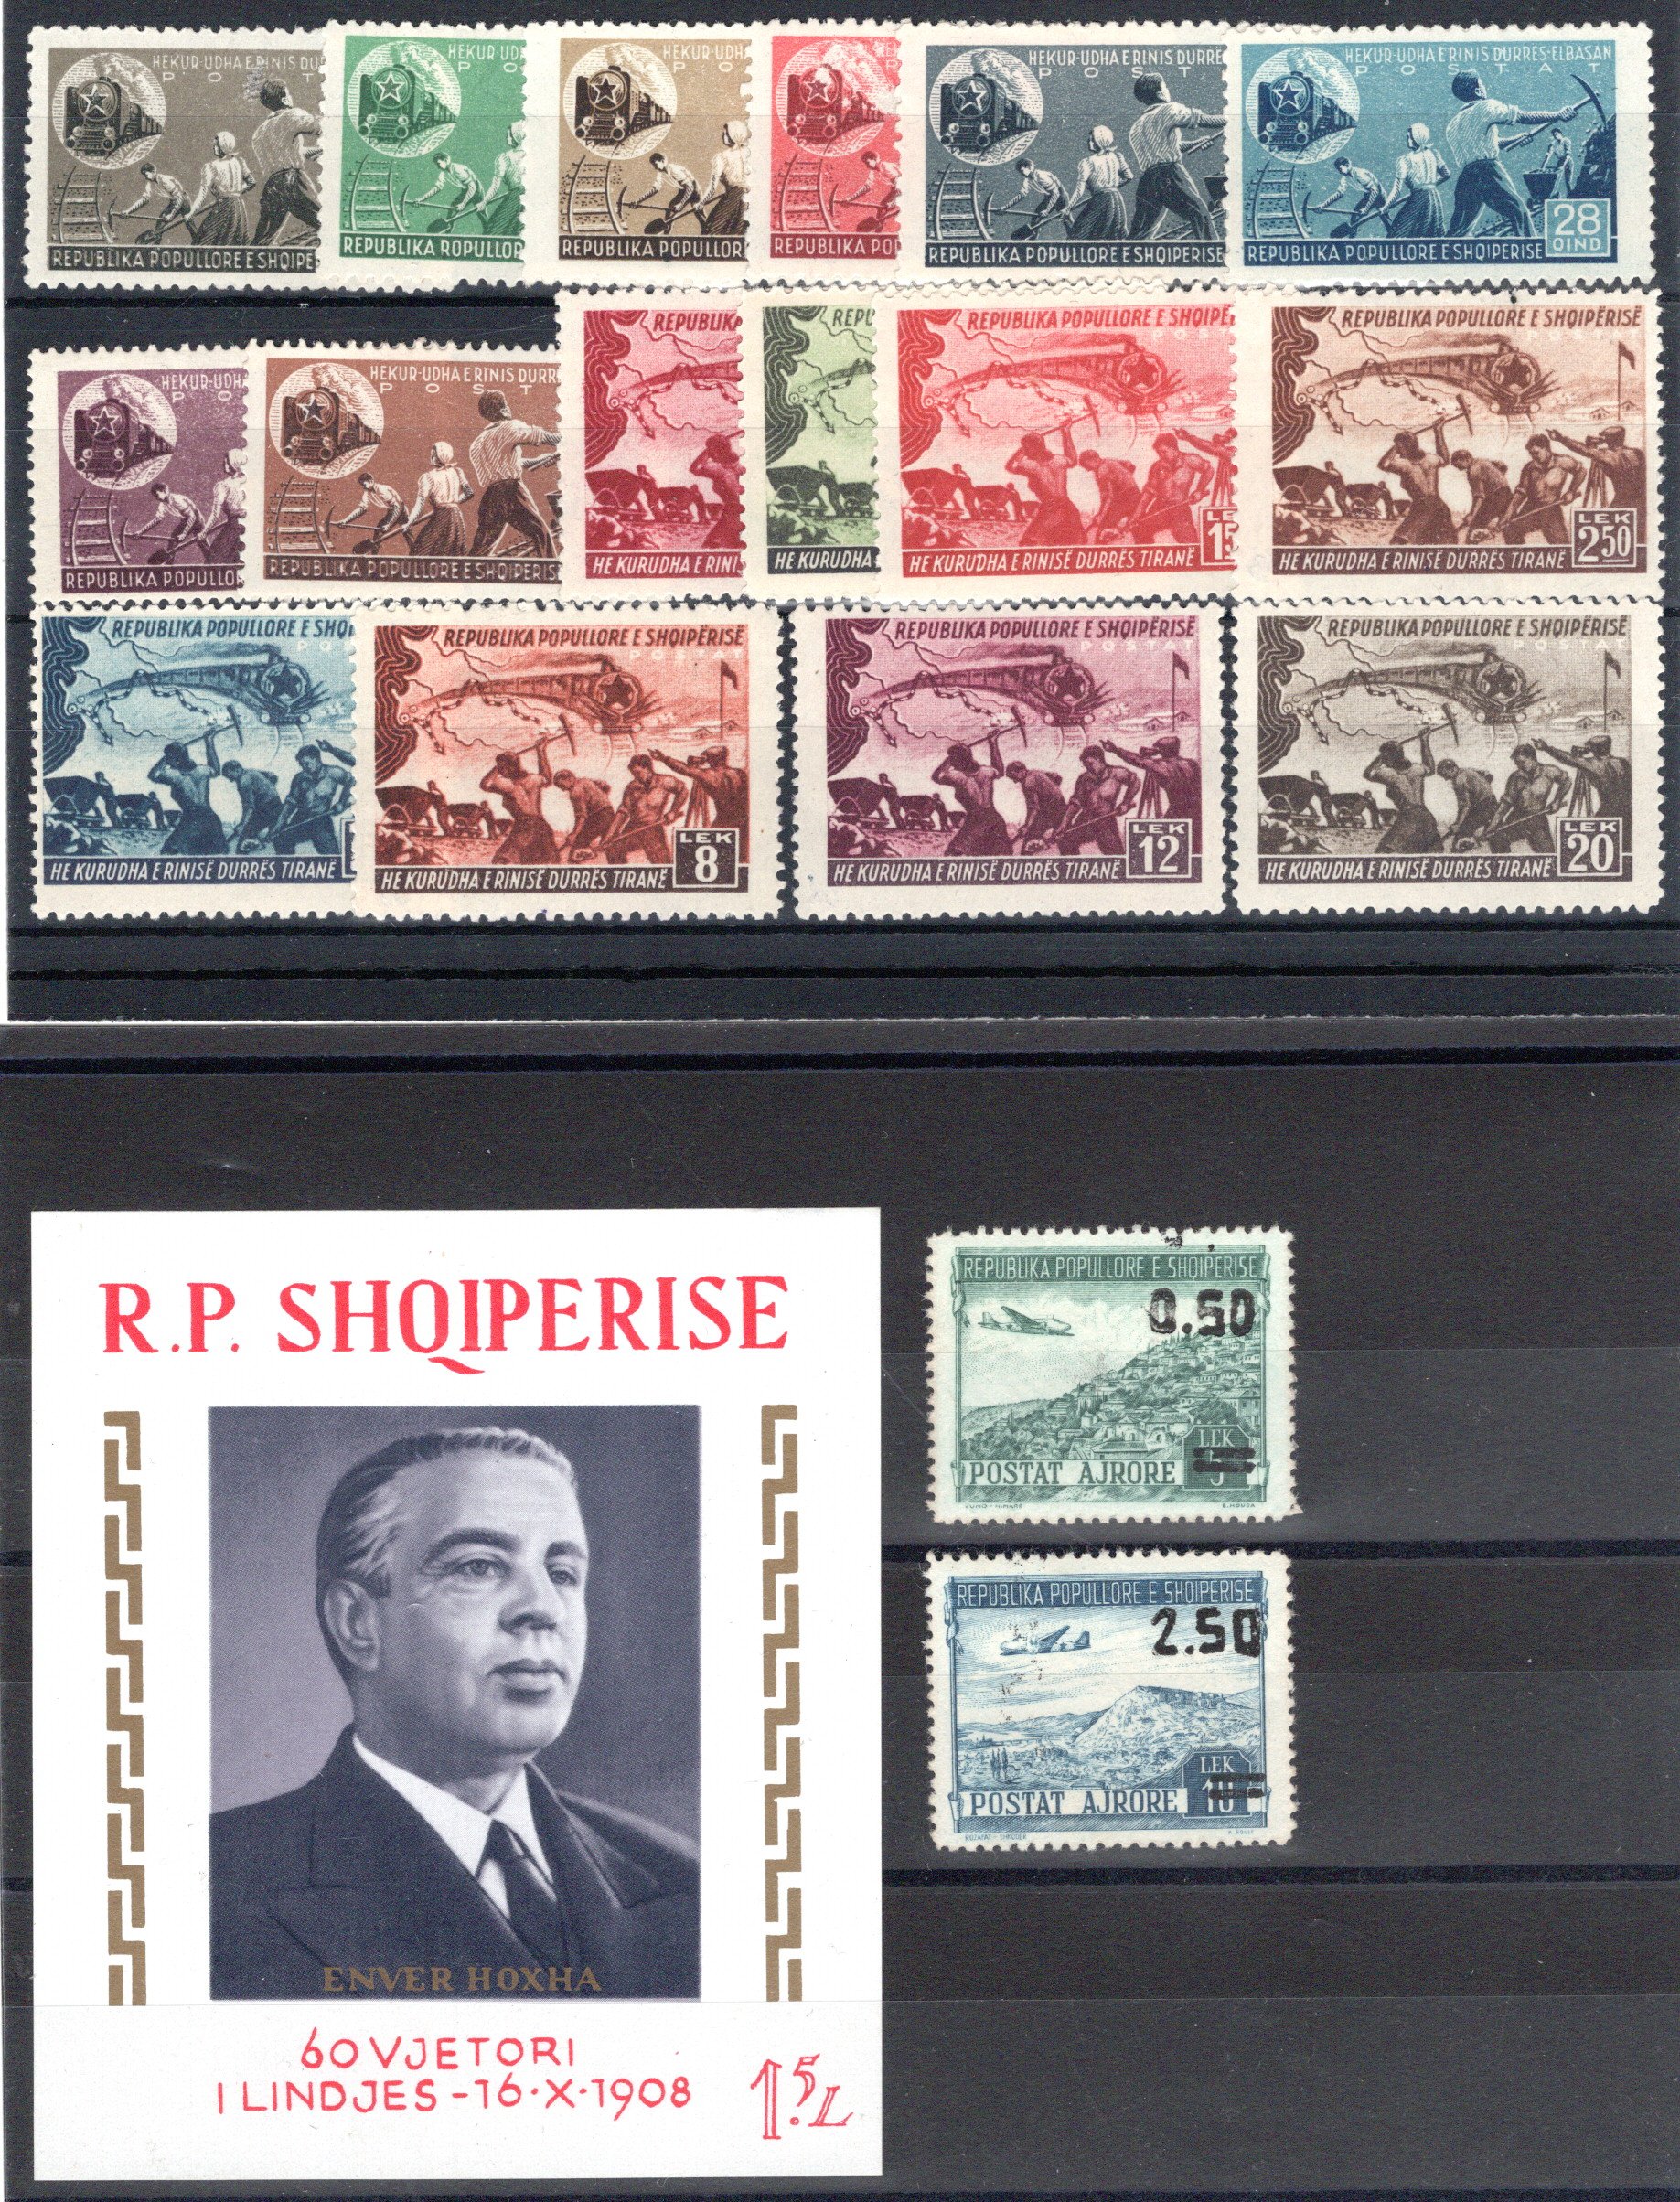 Lot 485 - europe Albania -  Georg Bühler Briefmarken Auktionen GmbH Georg Bühler 336 auction